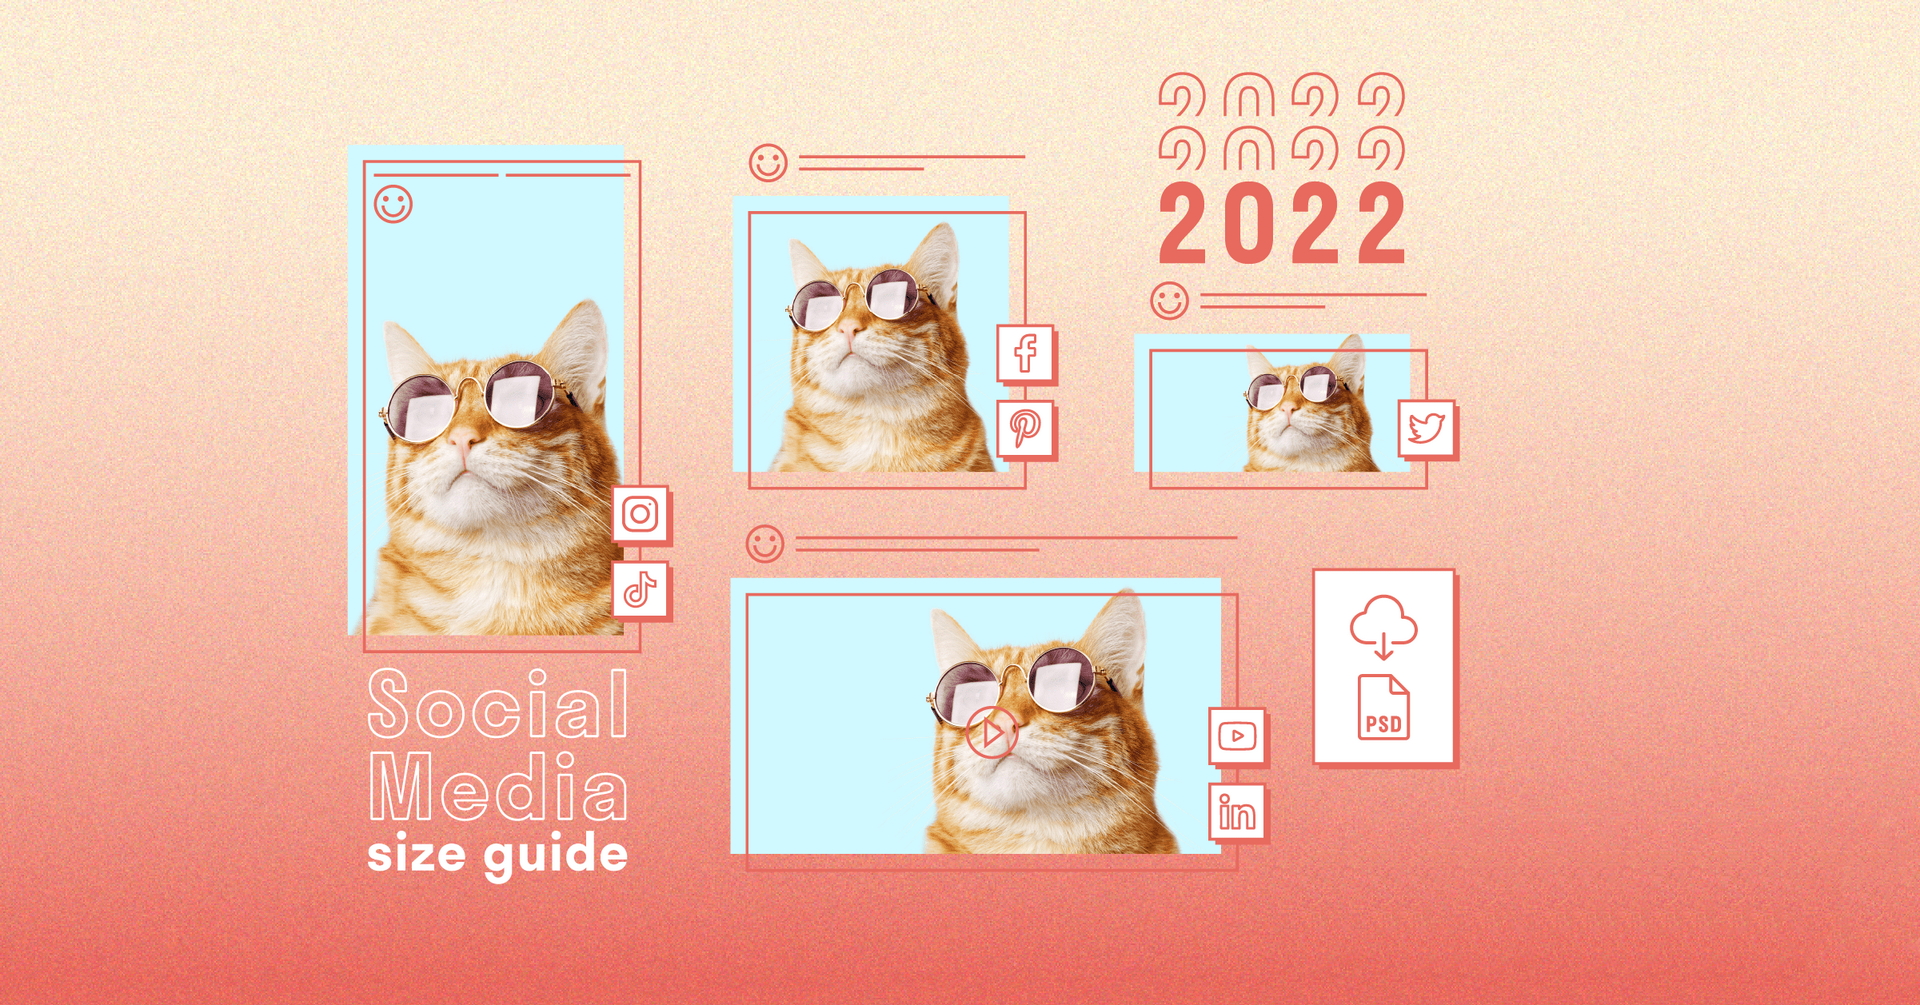 Kích thước hình ảnh trên mạng xã hội cho năm 2022